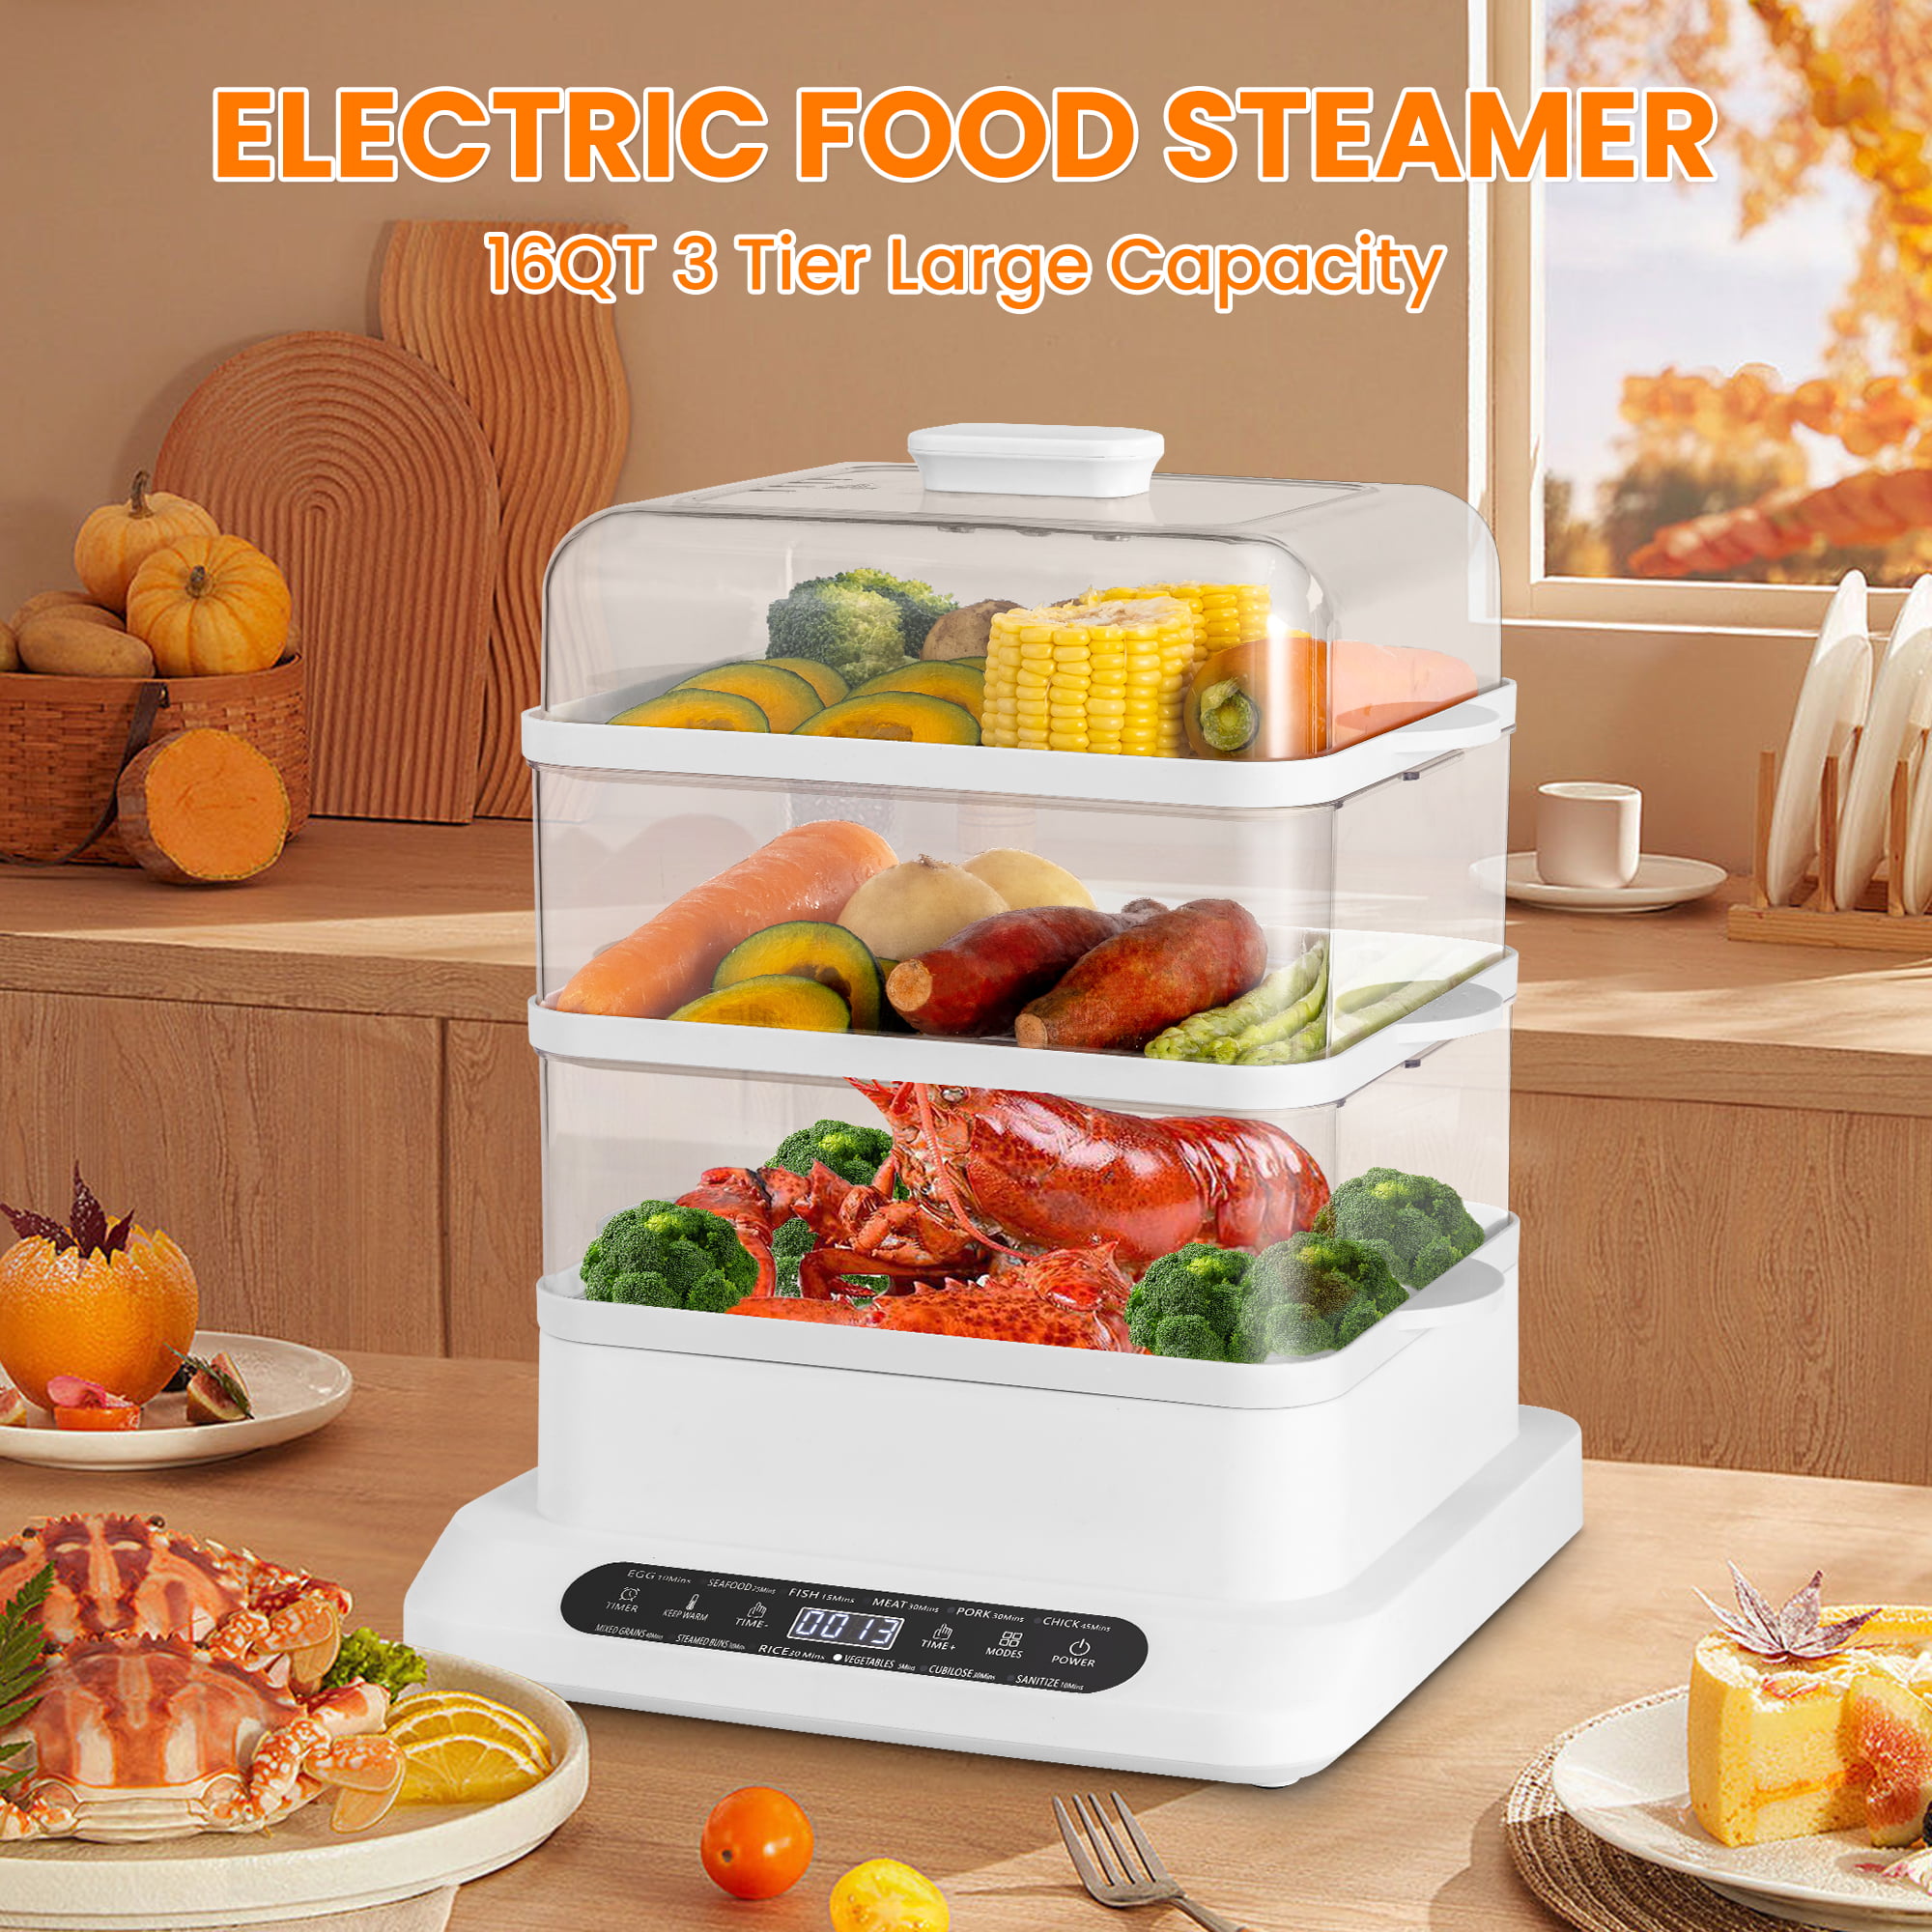 VEVOR Electric Food Streamer 7.4 qt. Electric Vegetable Steamer